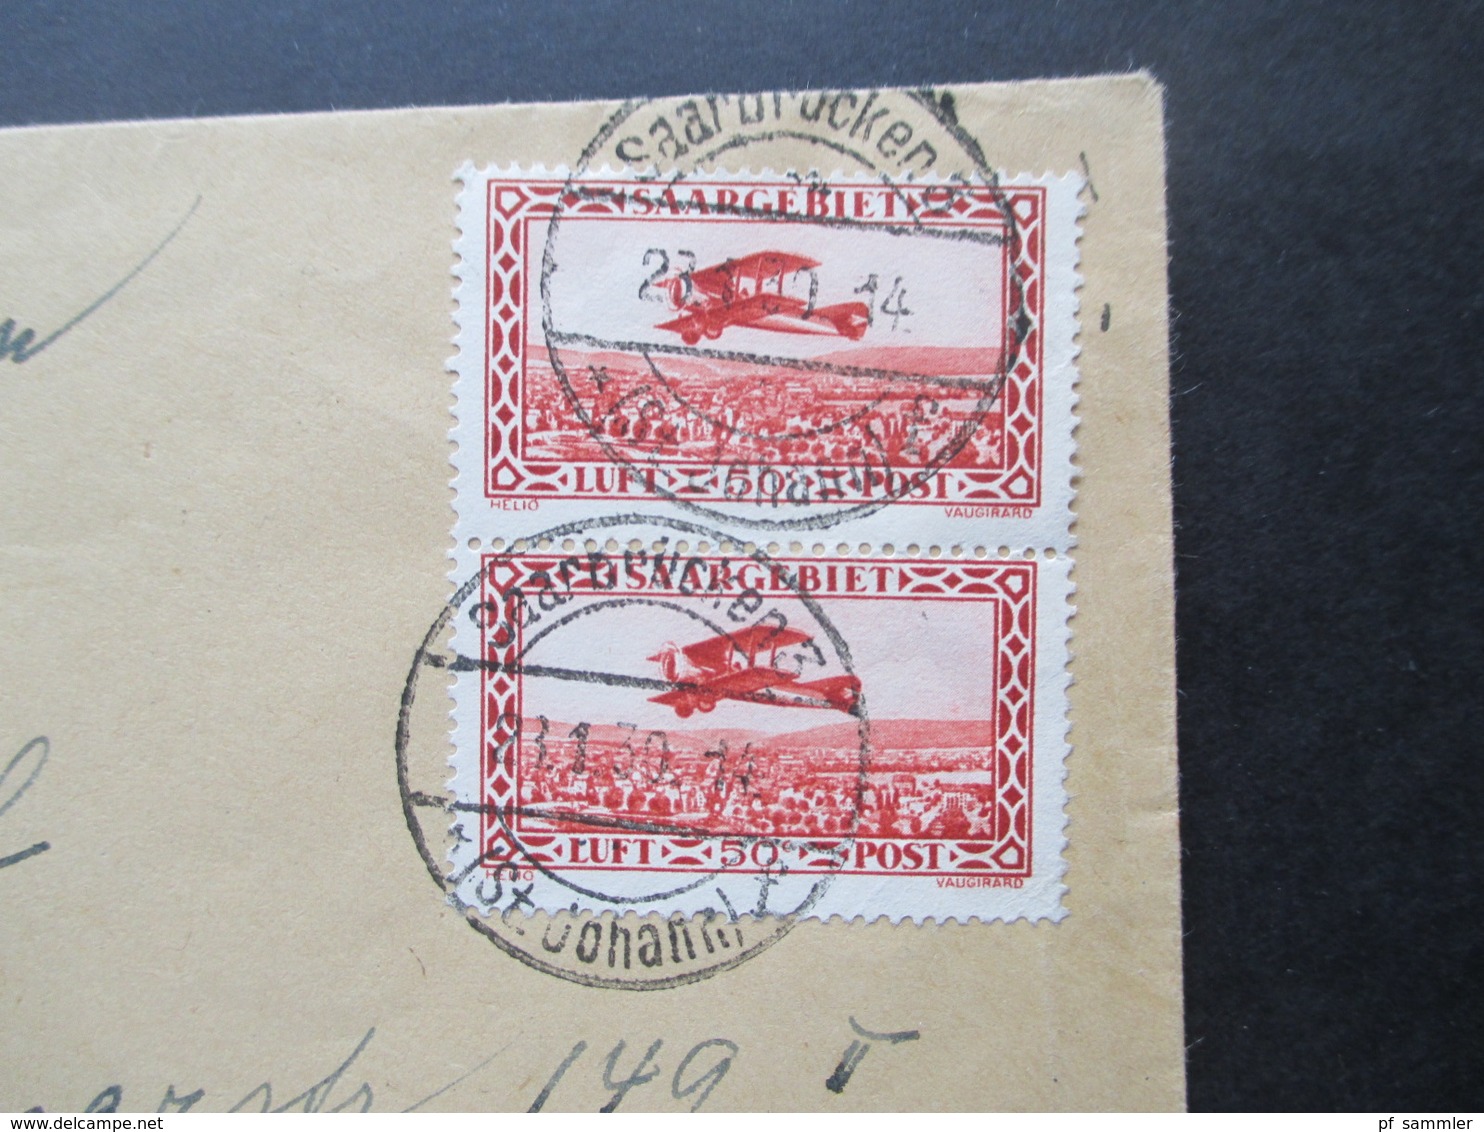 Saargebiet 1930 Flugpostmarken Nr. 126 / 127 MiF Einschreiben Saarbrücken 3 (St. Johann) Nach München Wertzeichenversand - Storia Postale